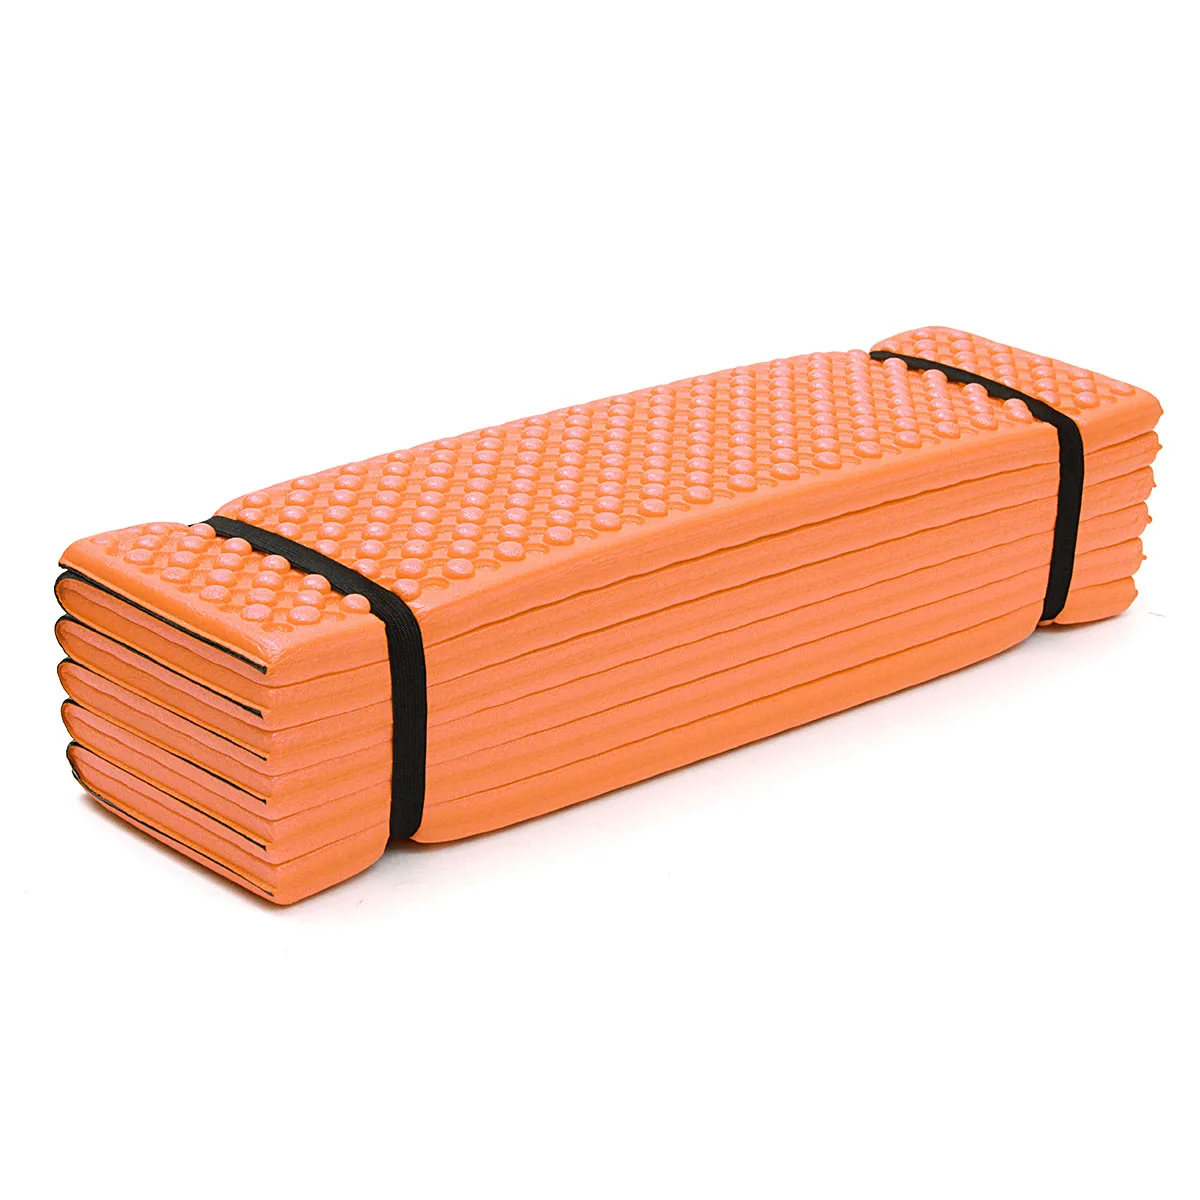 Открытый походный коврик Сверхлегкий пенопластовый коврик для пикника складной коврик для яиц пляжный коврик палатка коврик для сна влагостойкий туристический матрас - Цвет: Orange